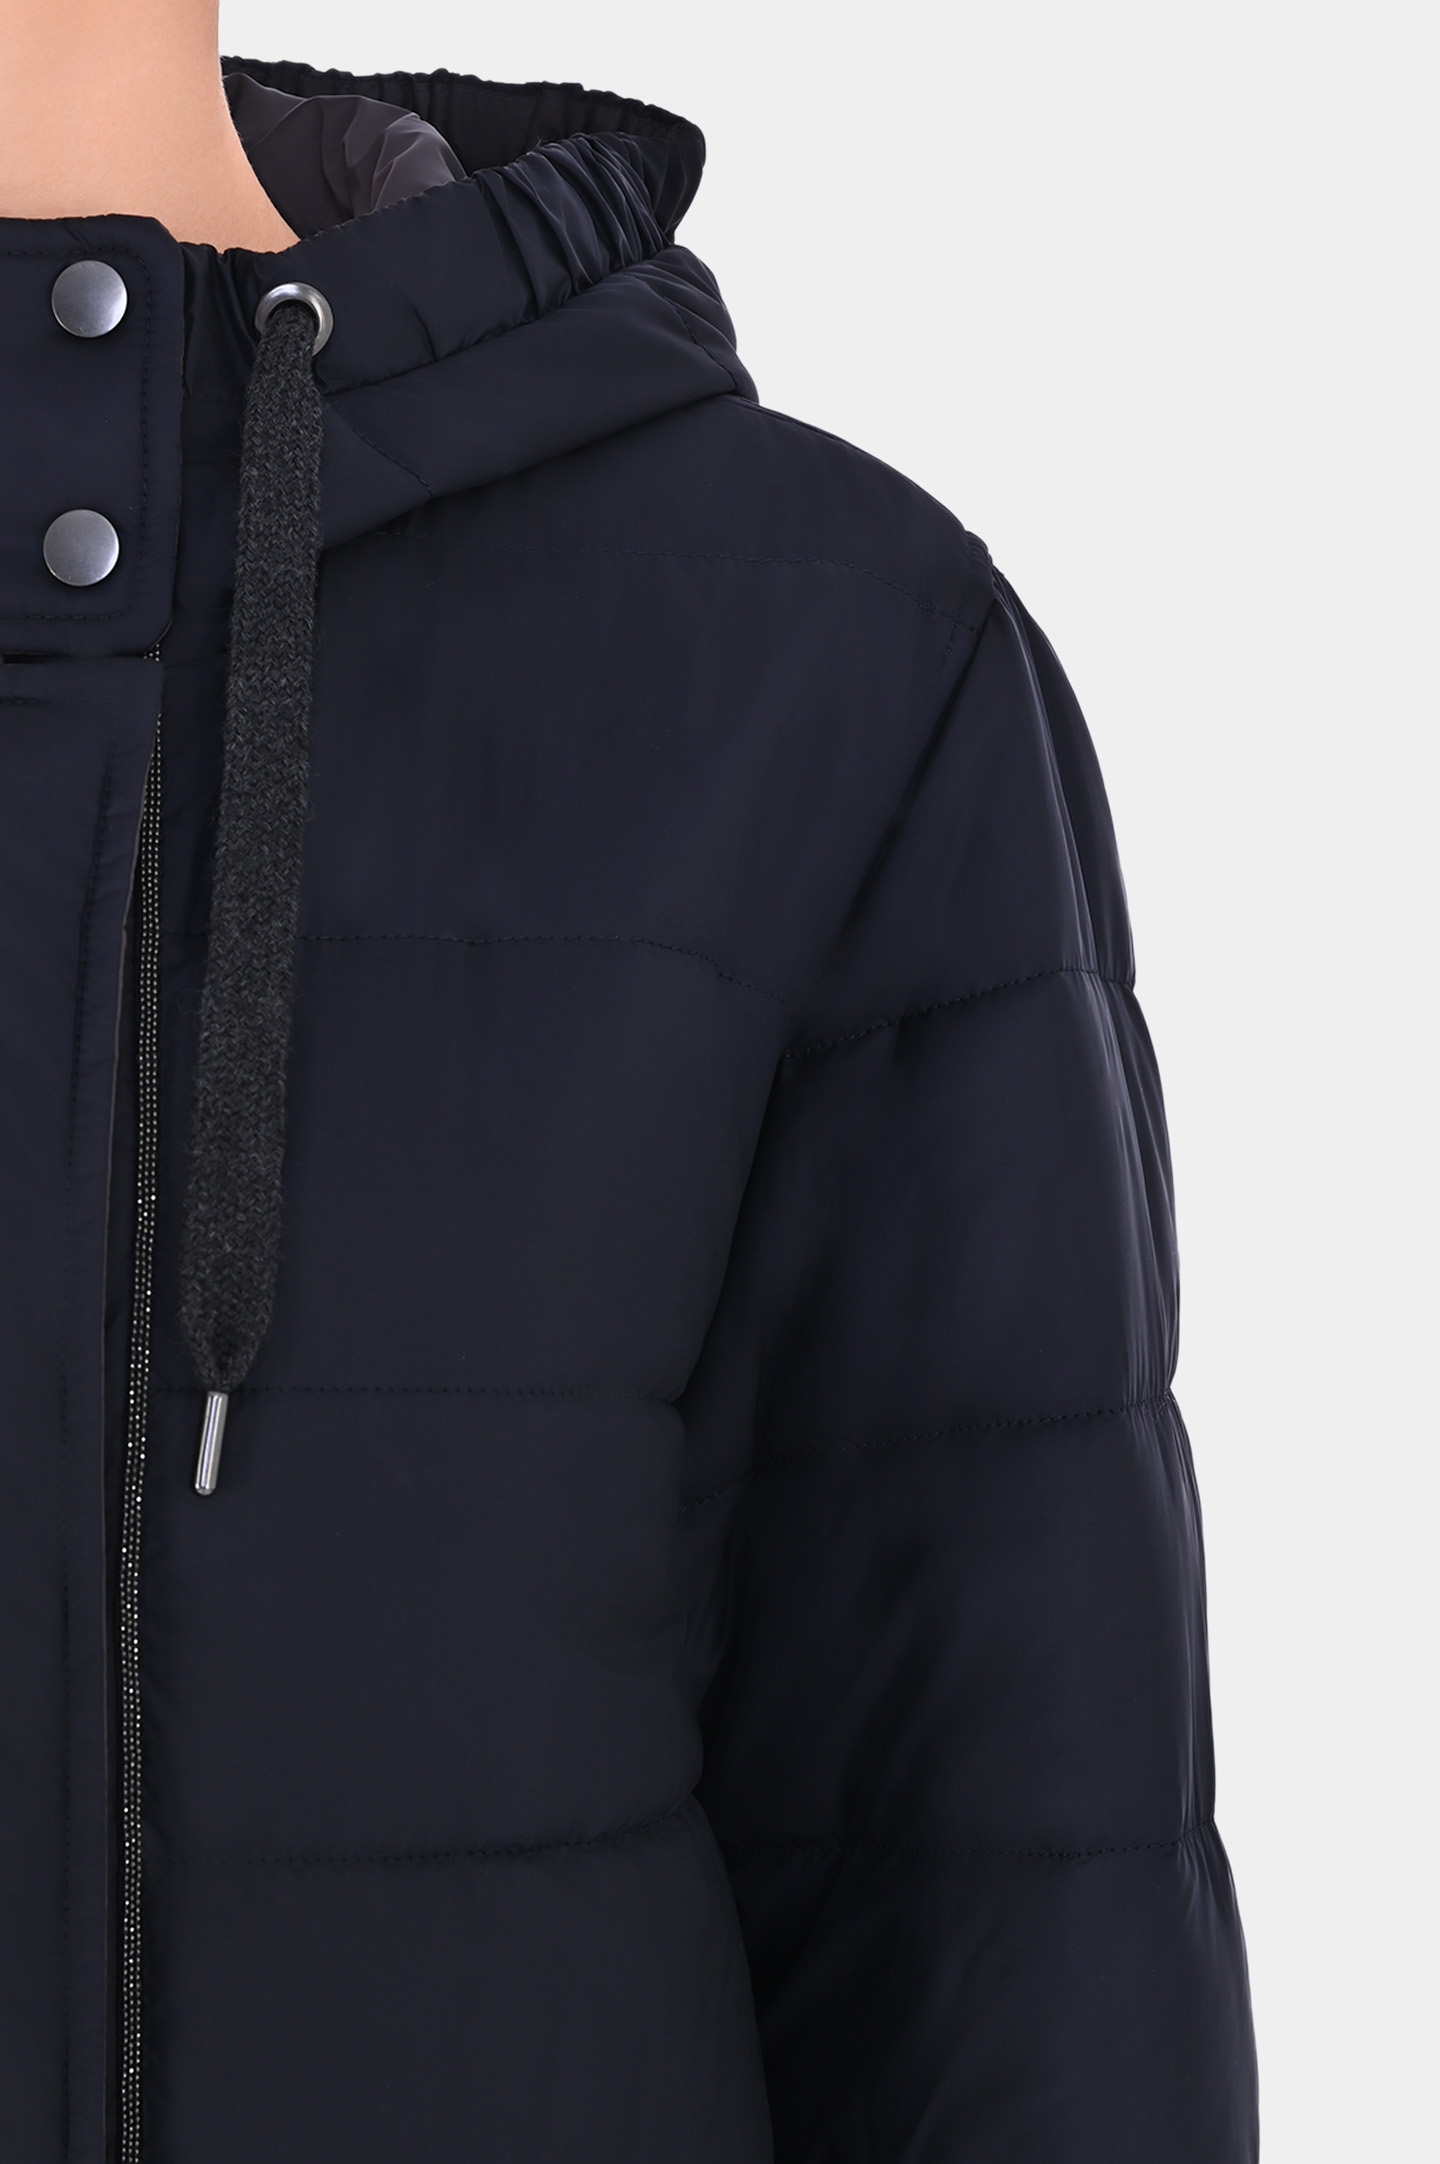 Куртка BRUNELLO  CUCINELLI MH5049699P, цвет: Темно-синий, Женский